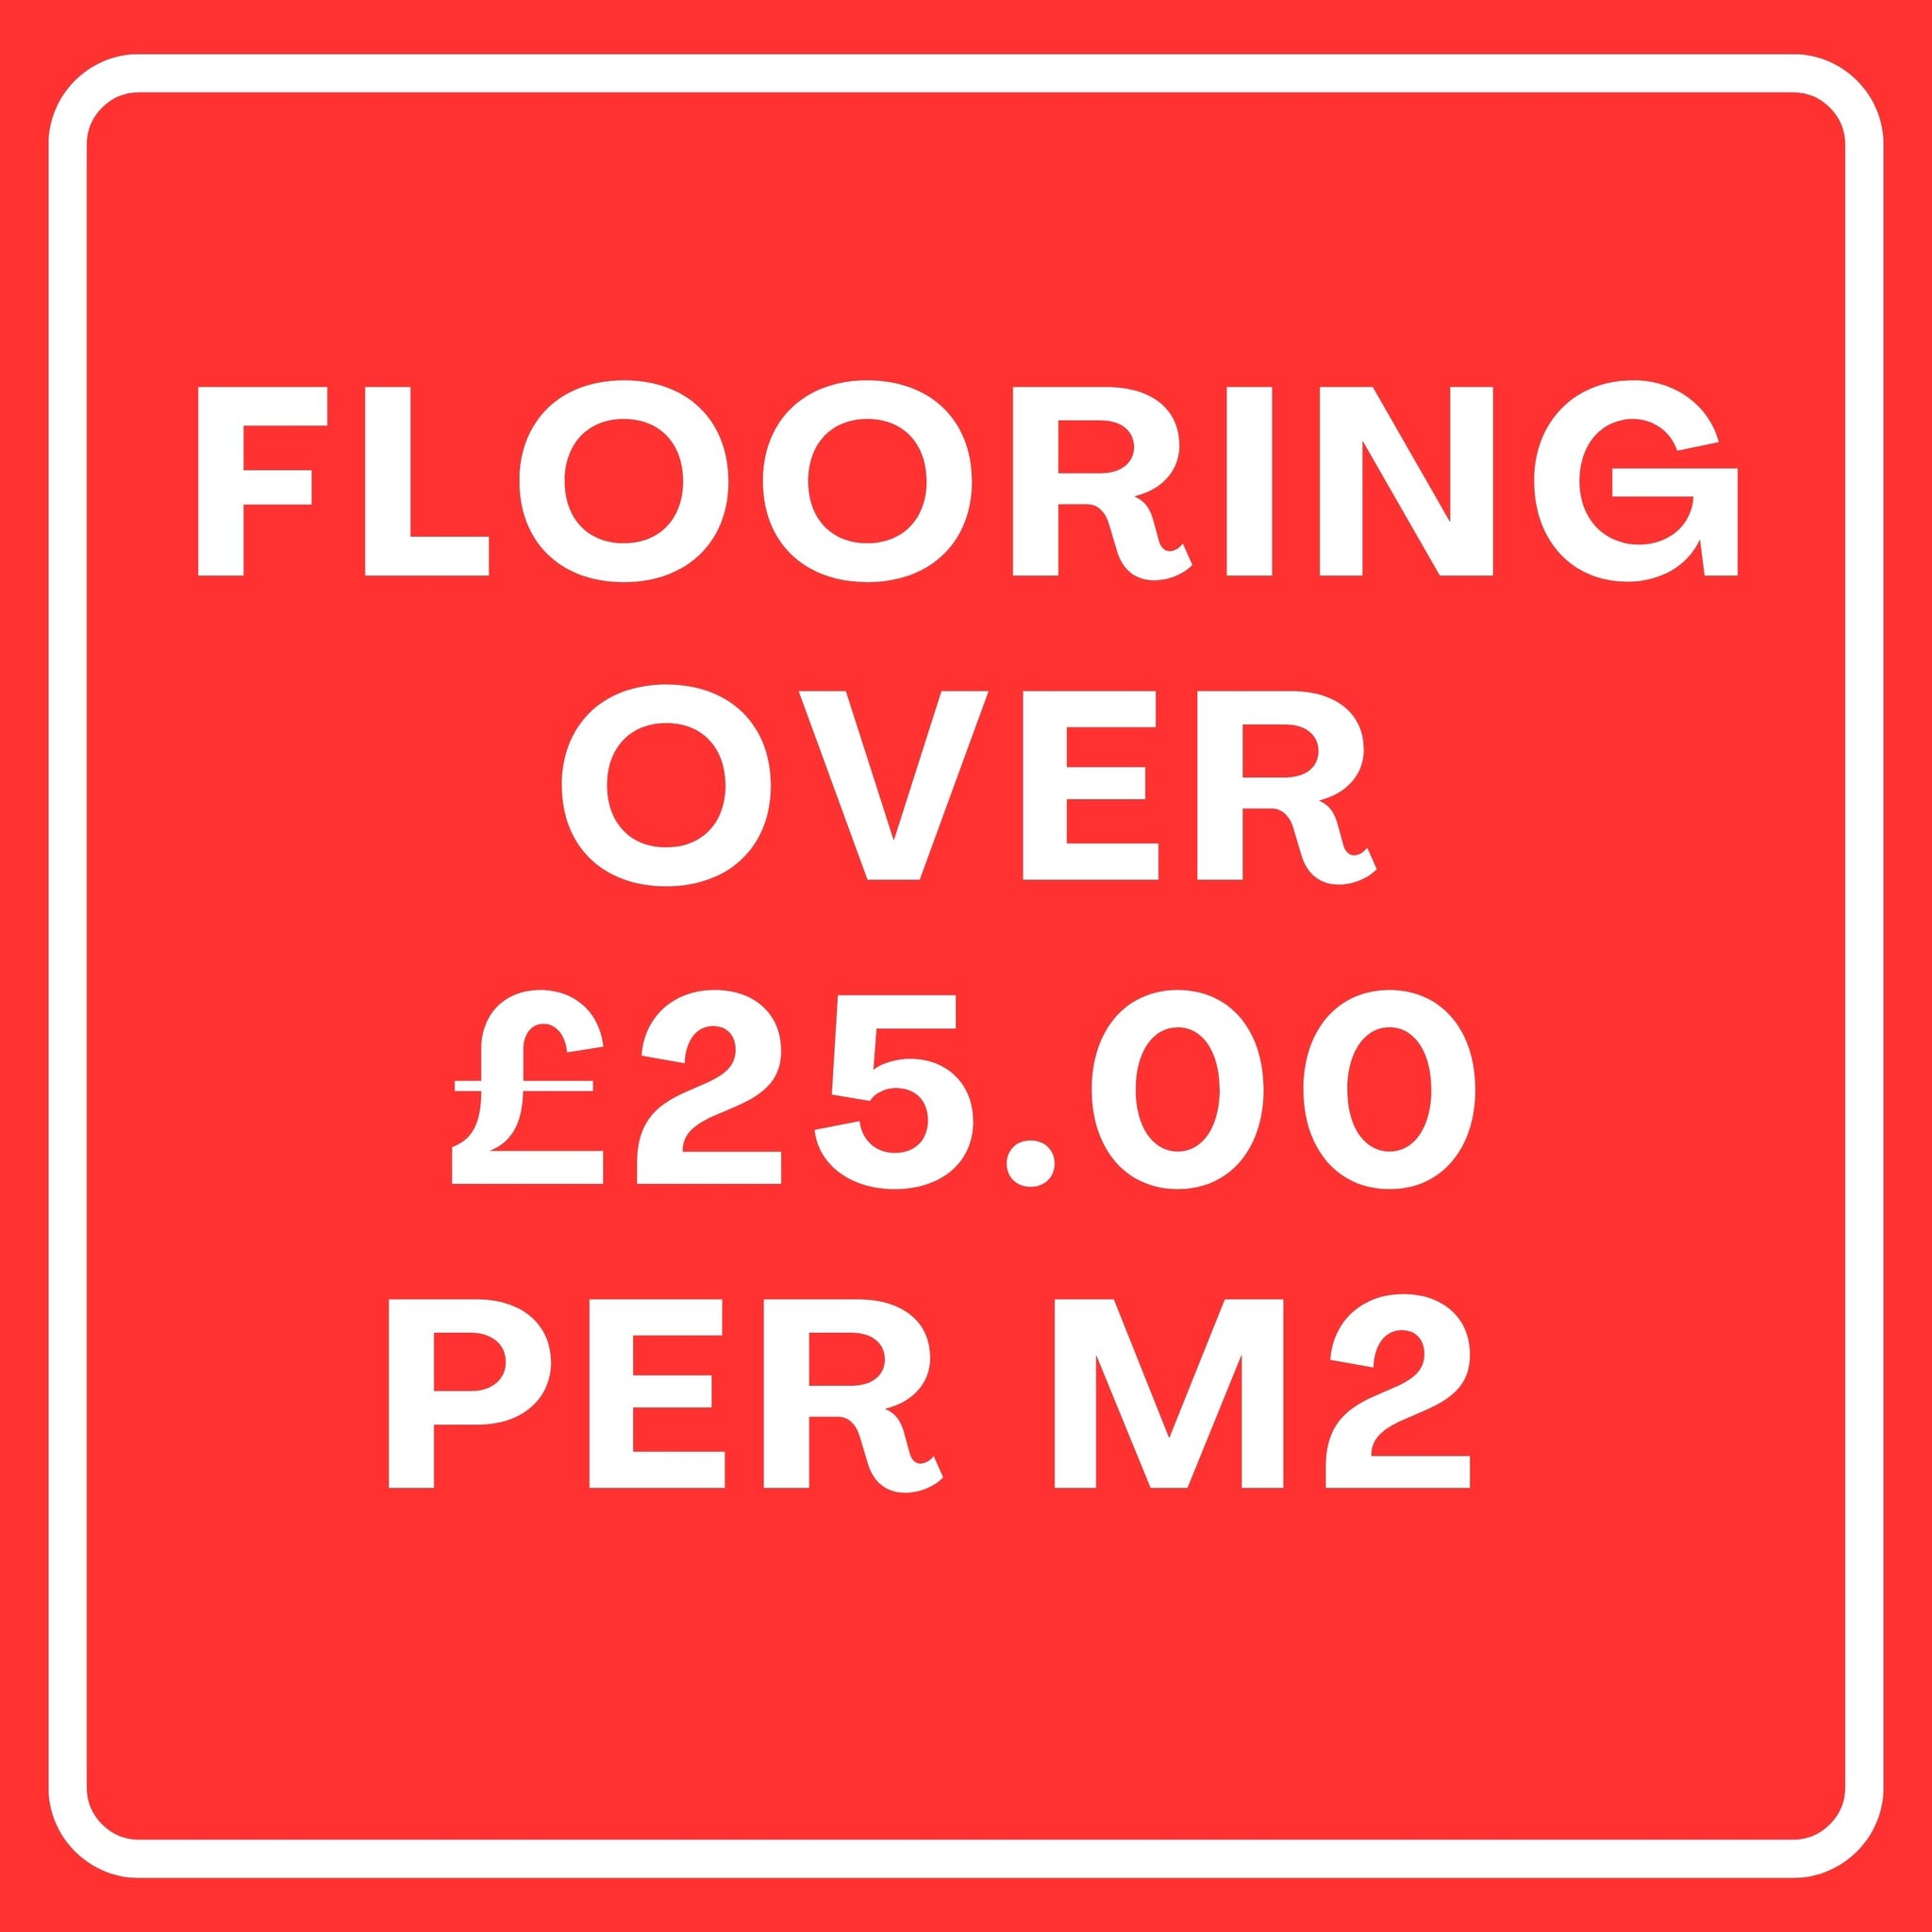 Flooring over £25m2